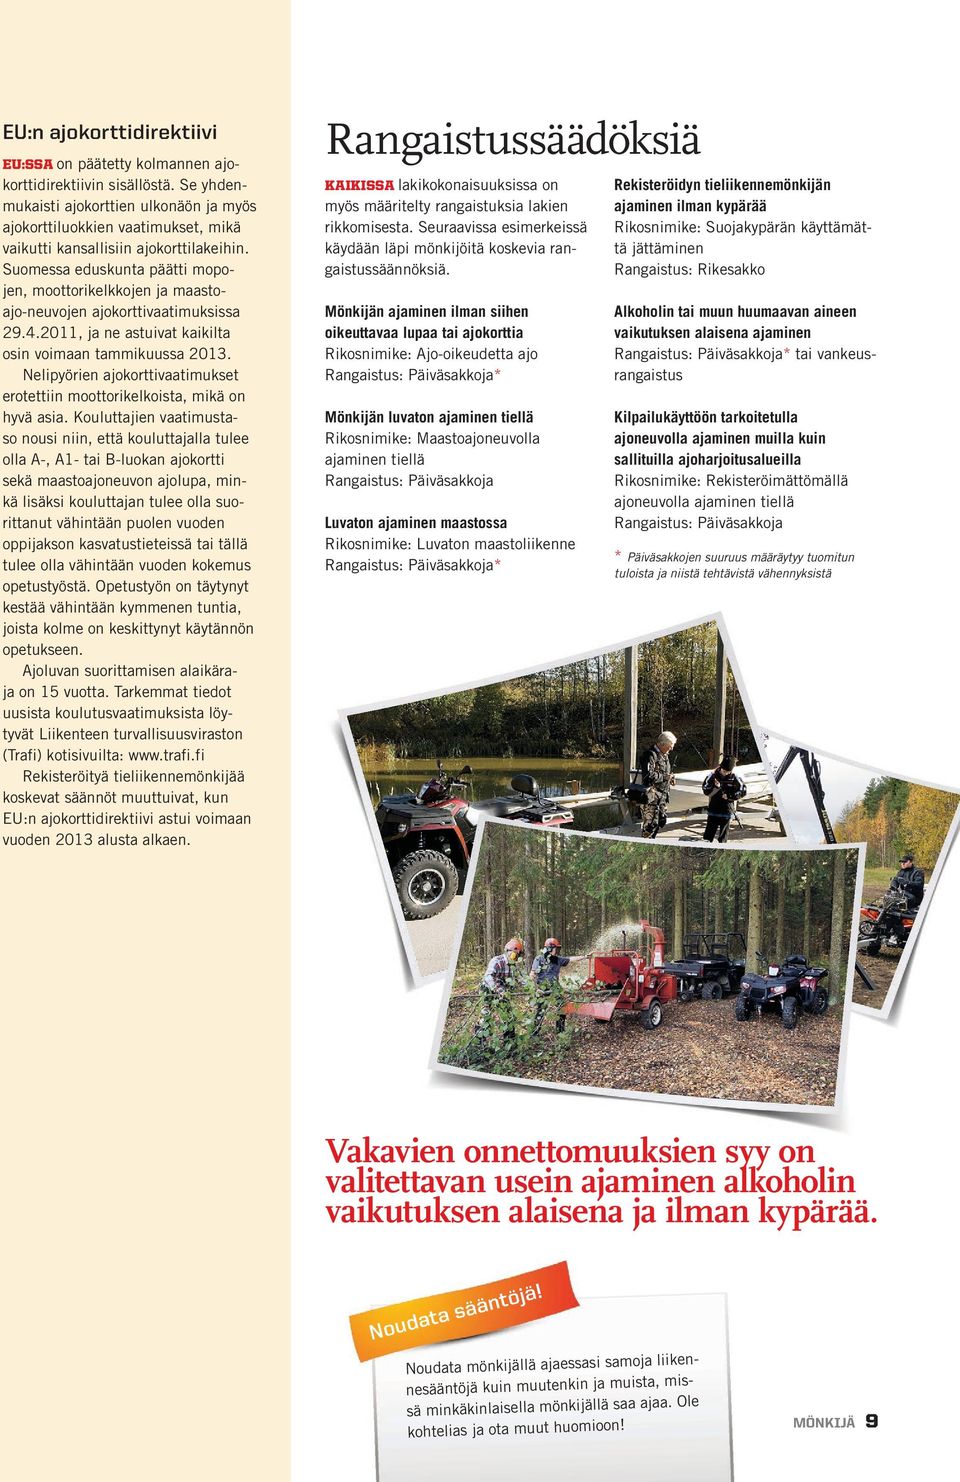 Suomessa eduskunta päätti mopojen, moottorikelkkojen ja maastoajo-neuvojen ajokorttivaatimuksissa 29.4.2011, ja ne astuivat kaikilta osin voimaan tammikuussa 2013.